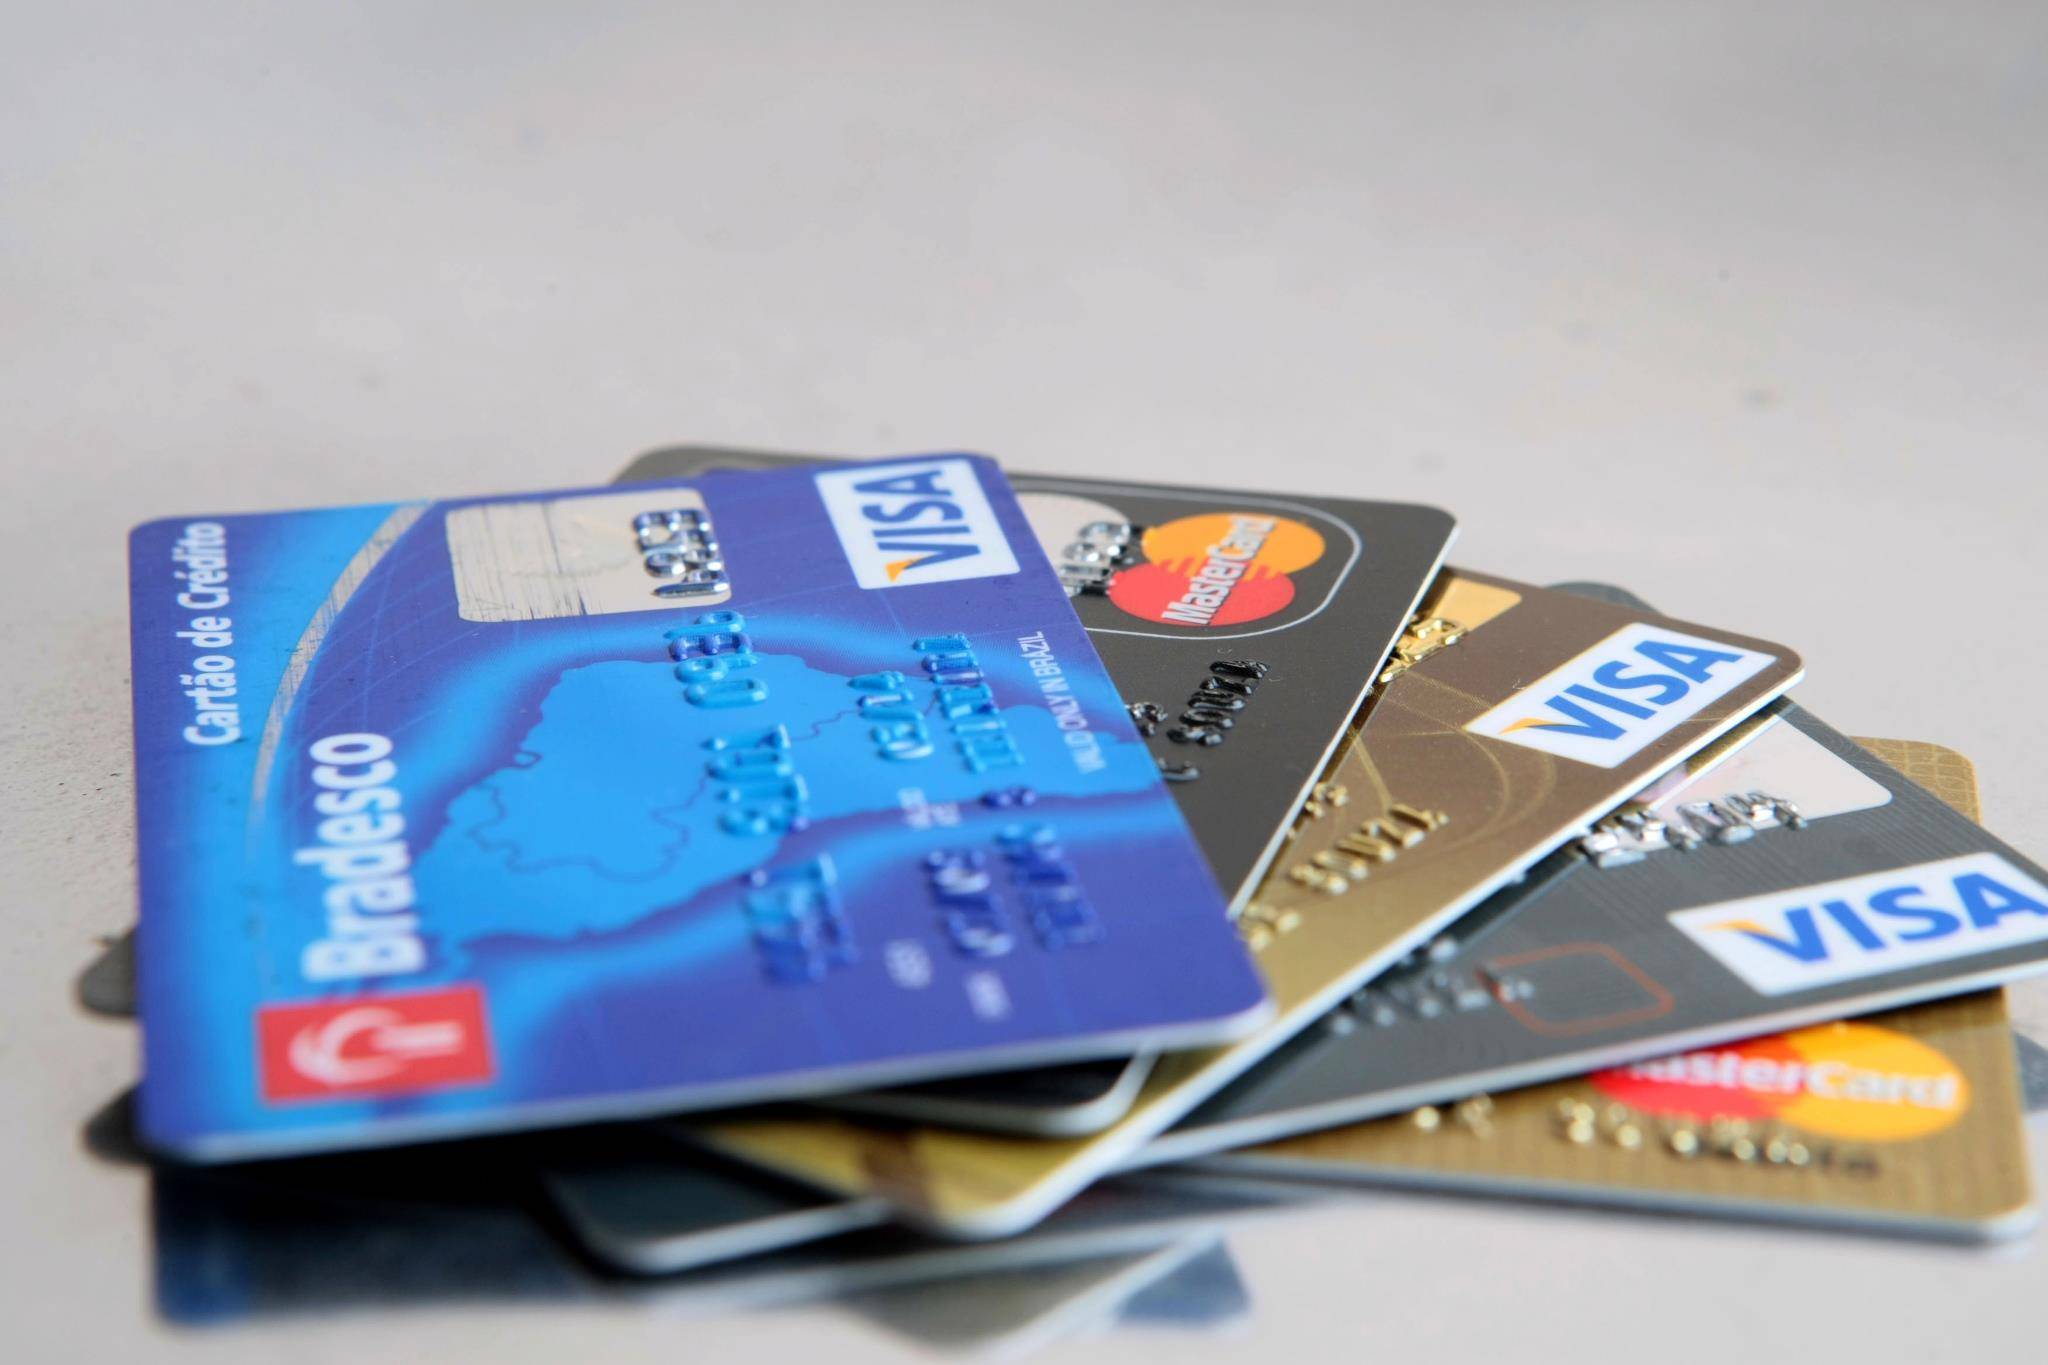 Millena Móveis tem 100% das vendas com cartão de crédito monitoradas pela Solução NDD